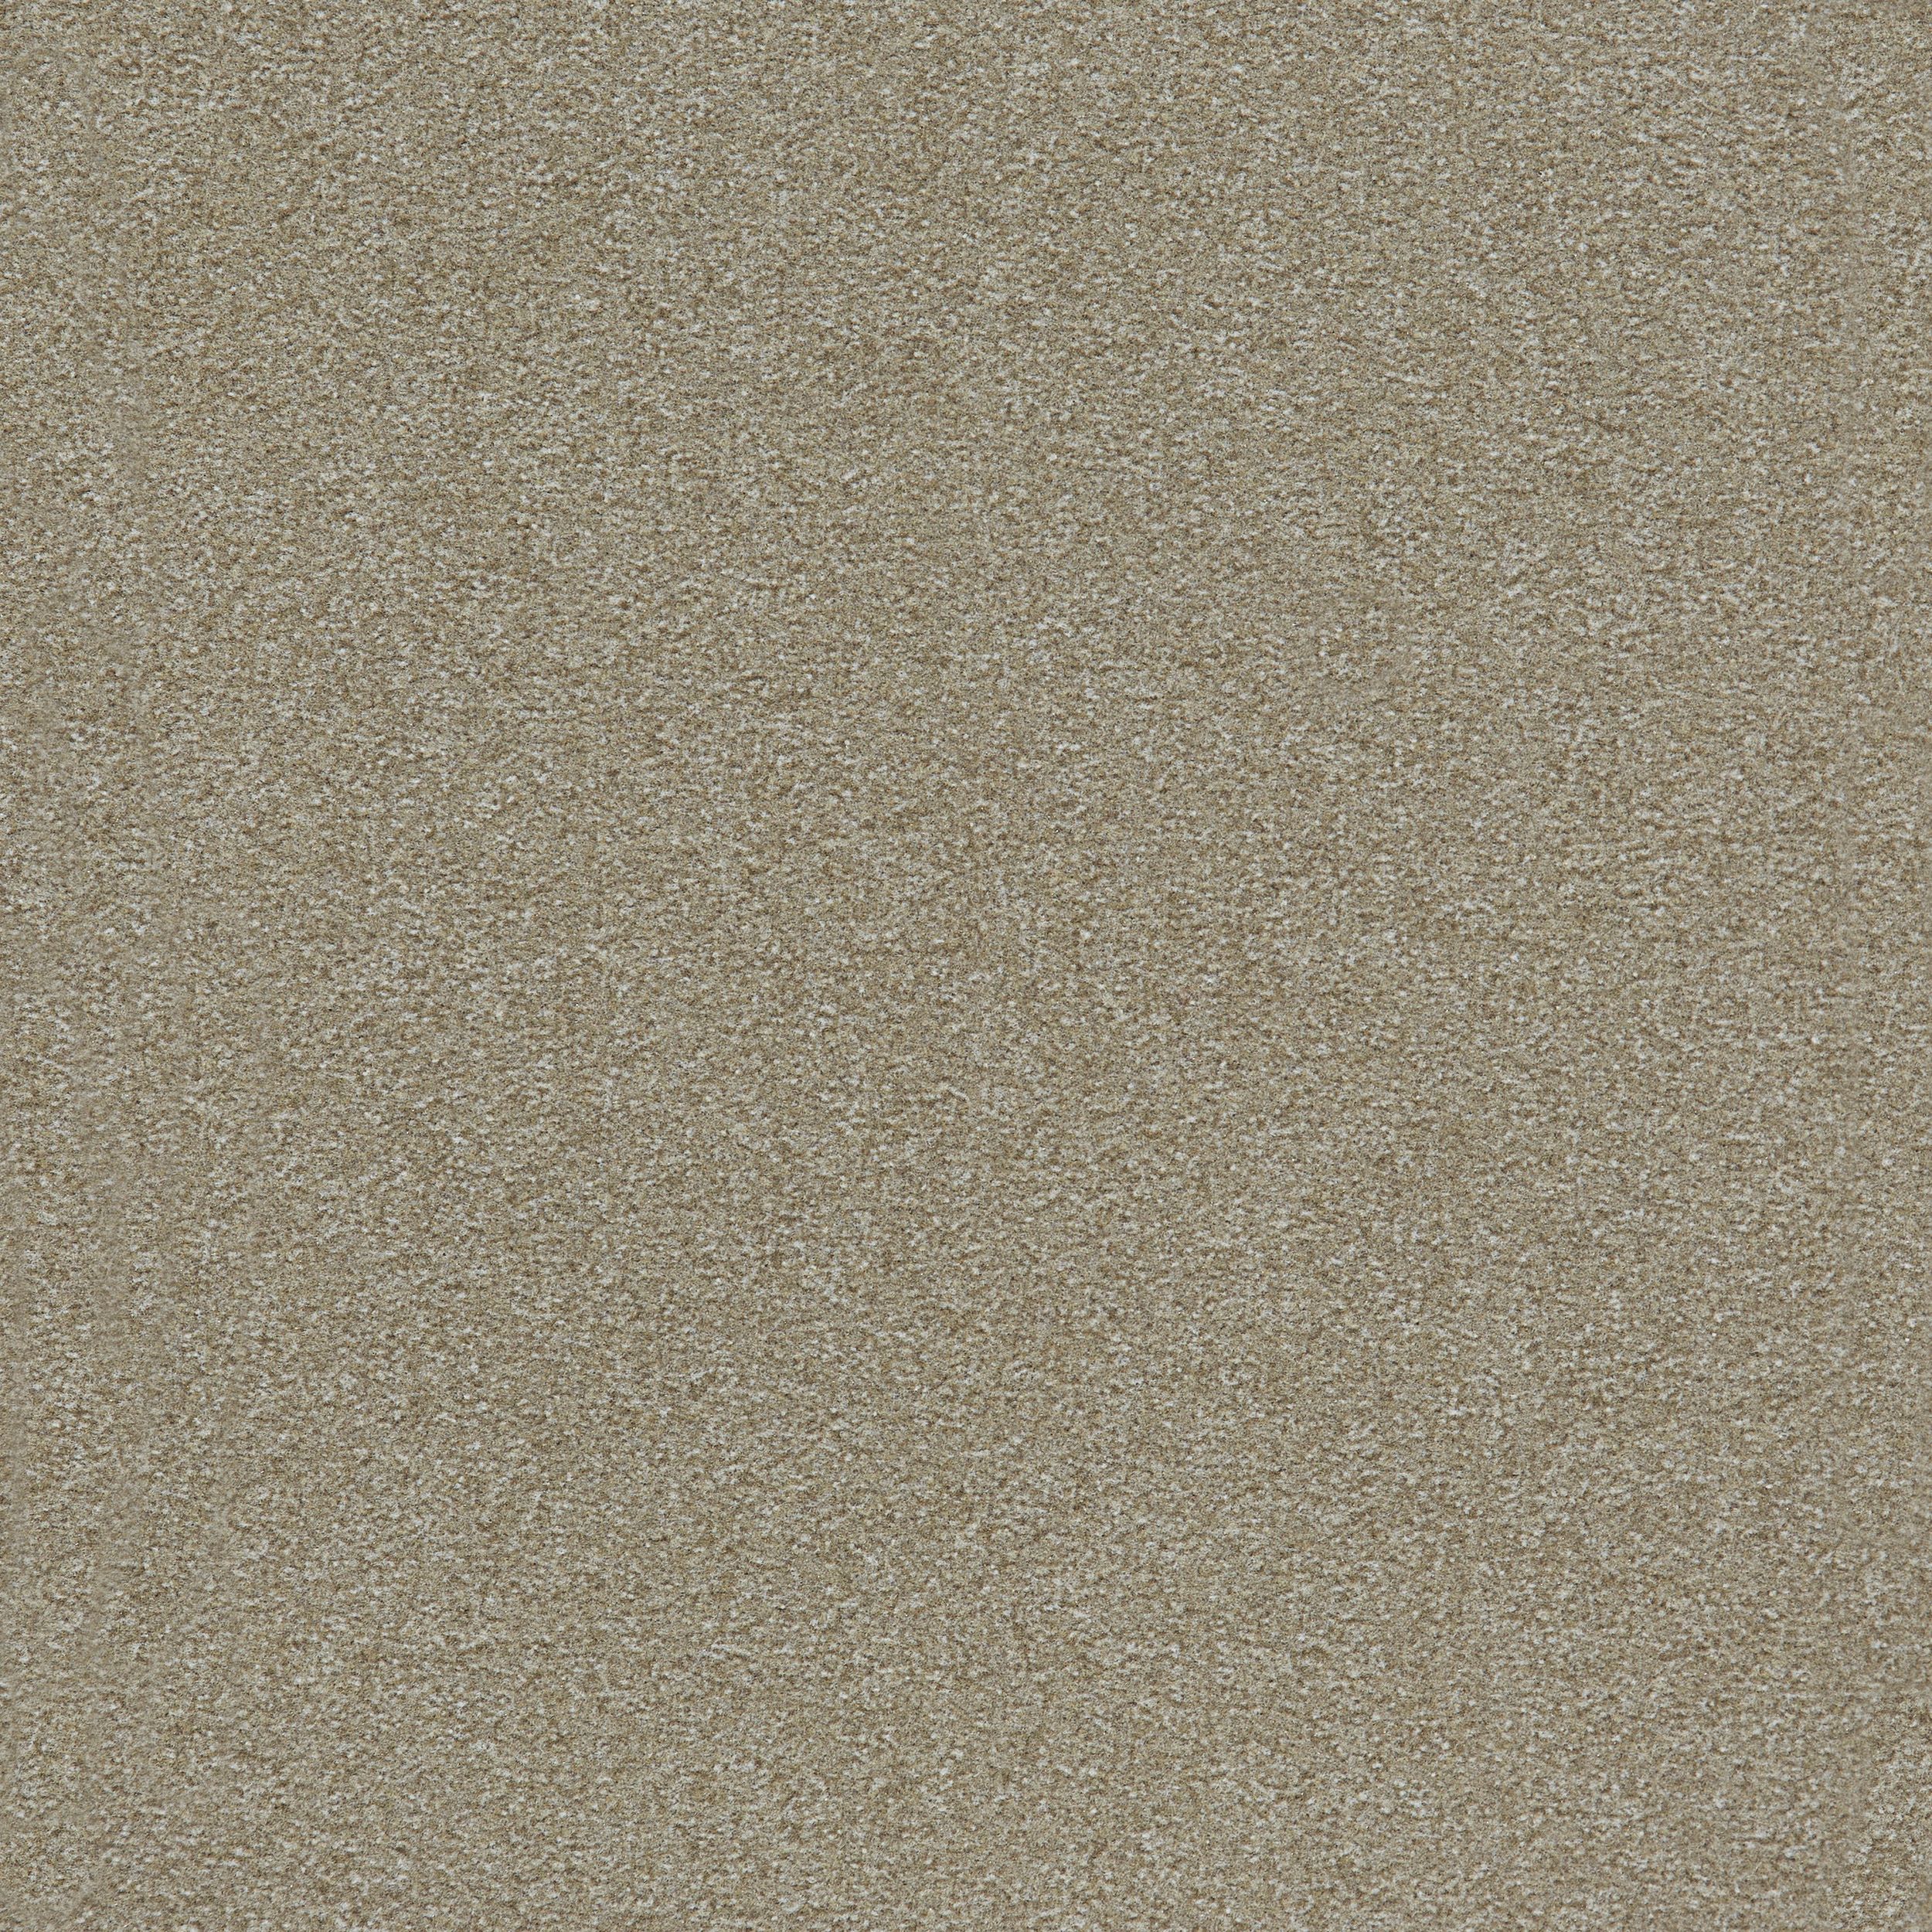 image Heuga 725 Carpet Tile In Oyster numéro 5